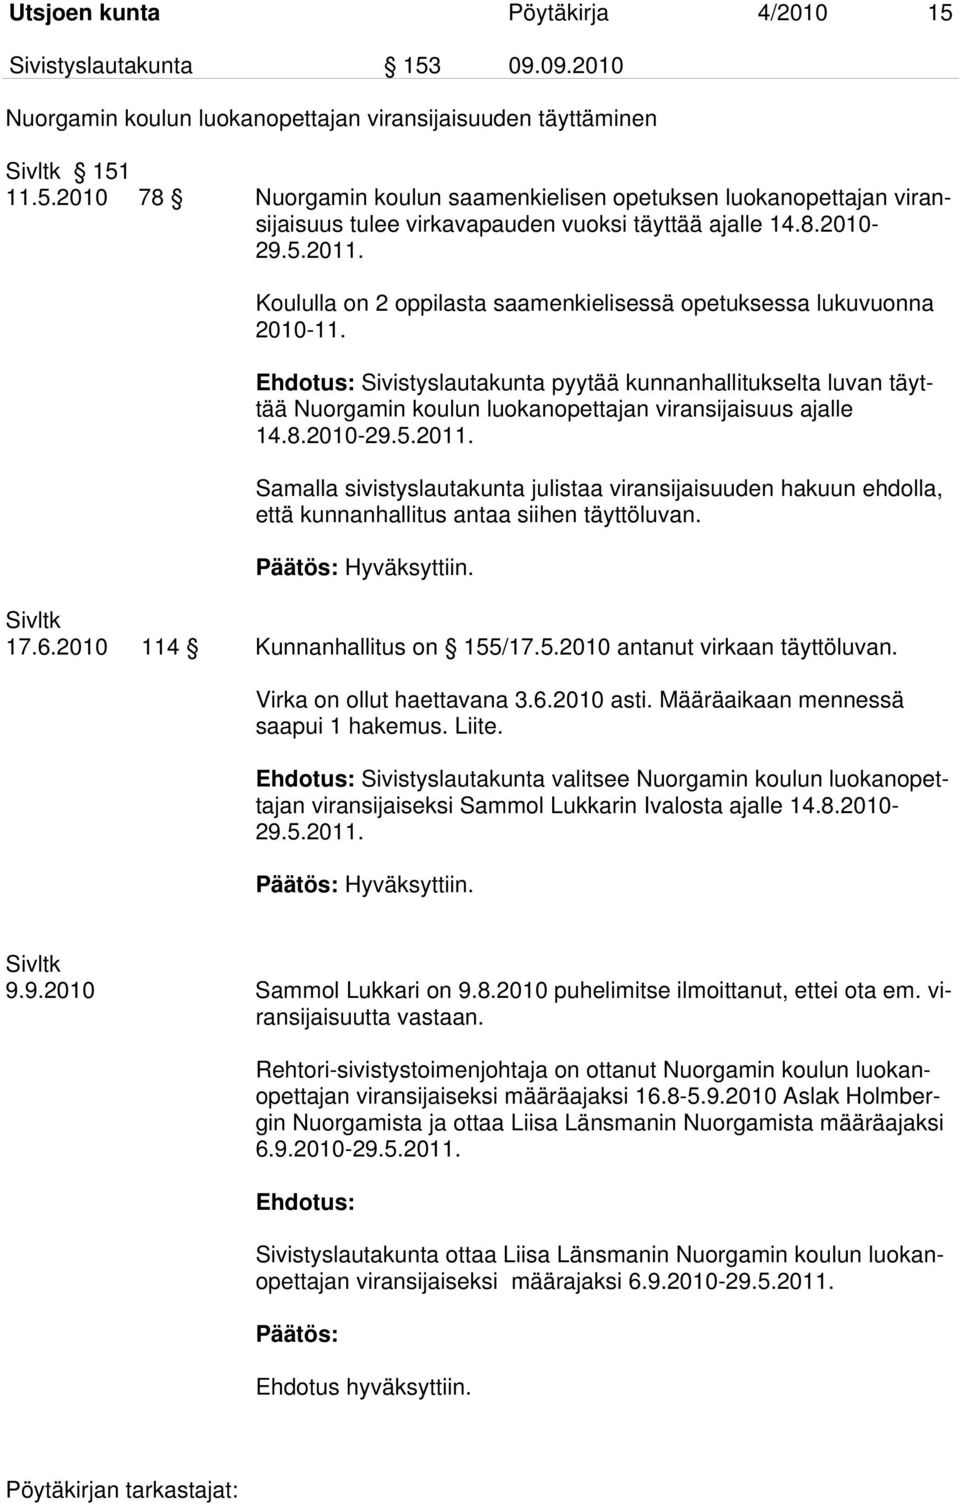 Ehdotus: Sivistyslautakunta pyytää kunnanhallitukselta luvan täyttää Nuorgamin koulun luokanopettajan viransijaisuus ajalle 14.8.2010-29.5.2011.